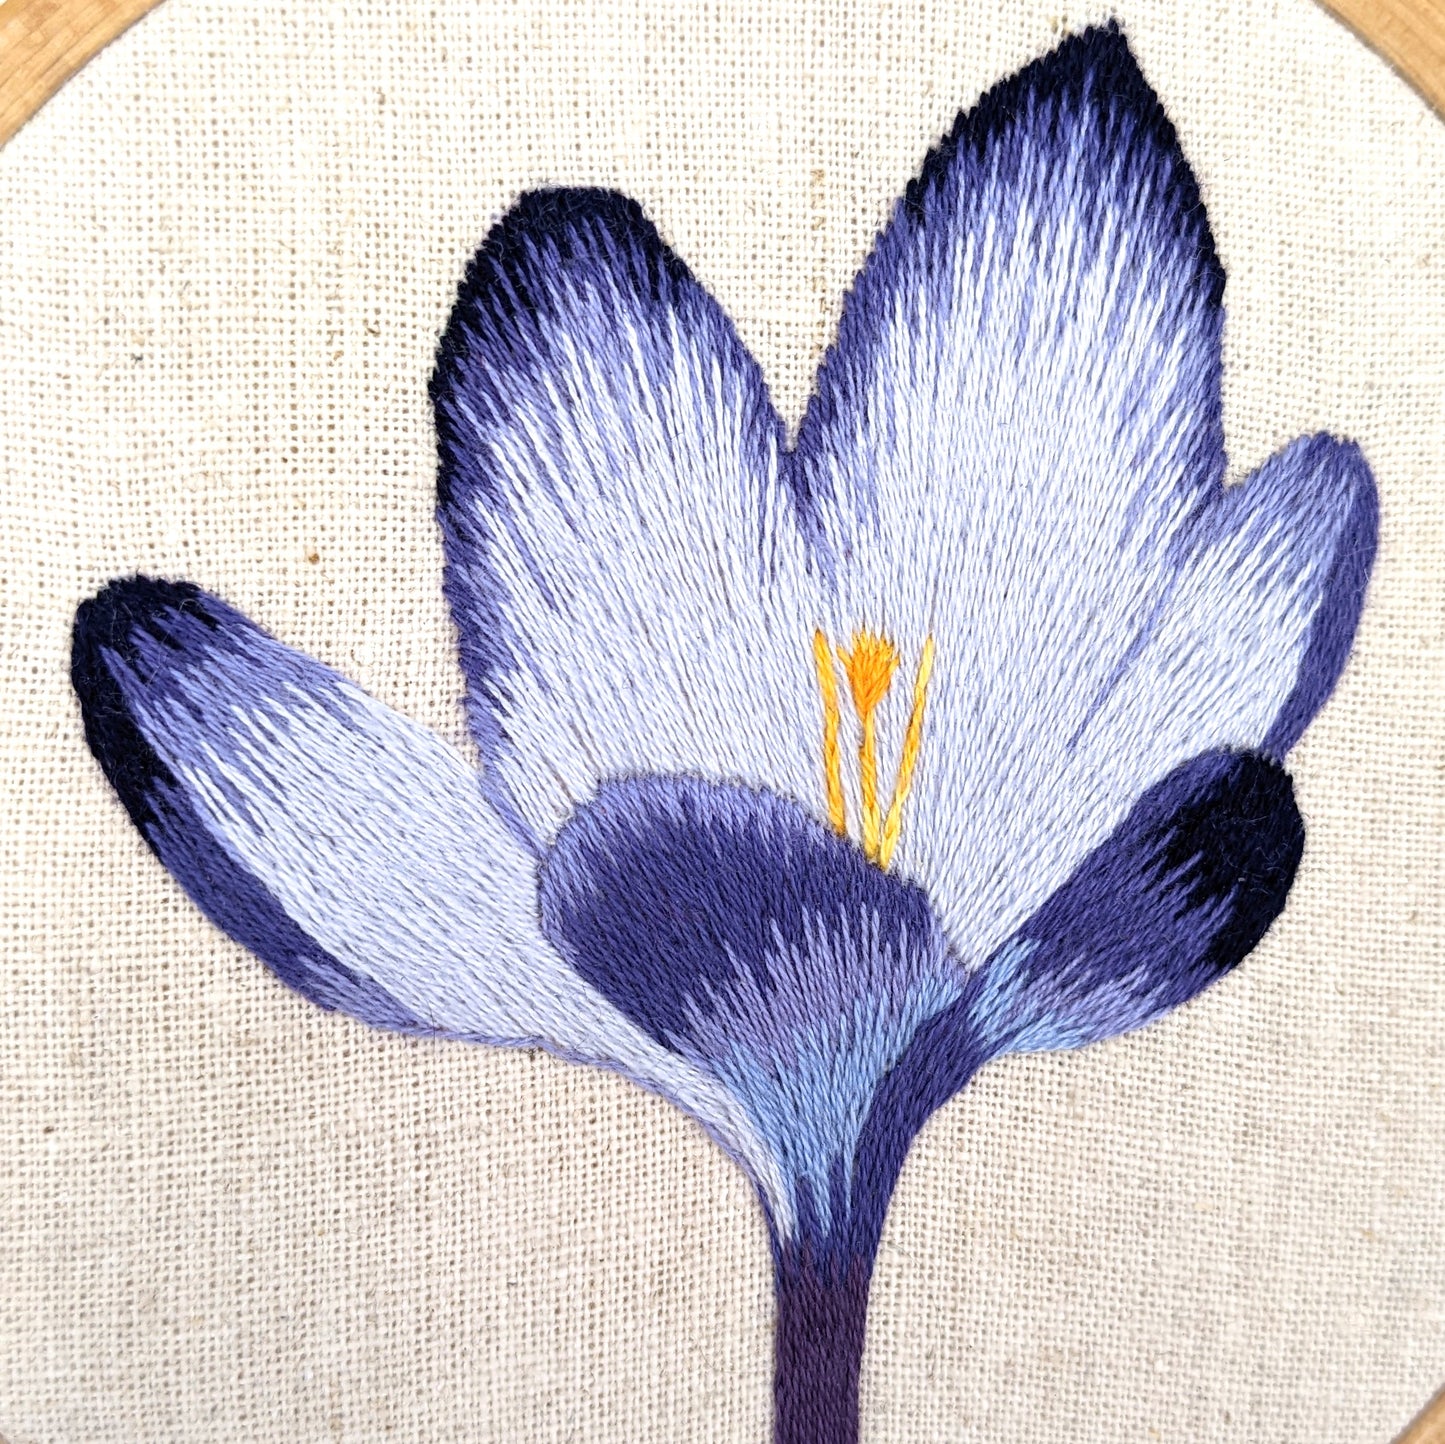 Crocus Flower Embroidery Hoop Art